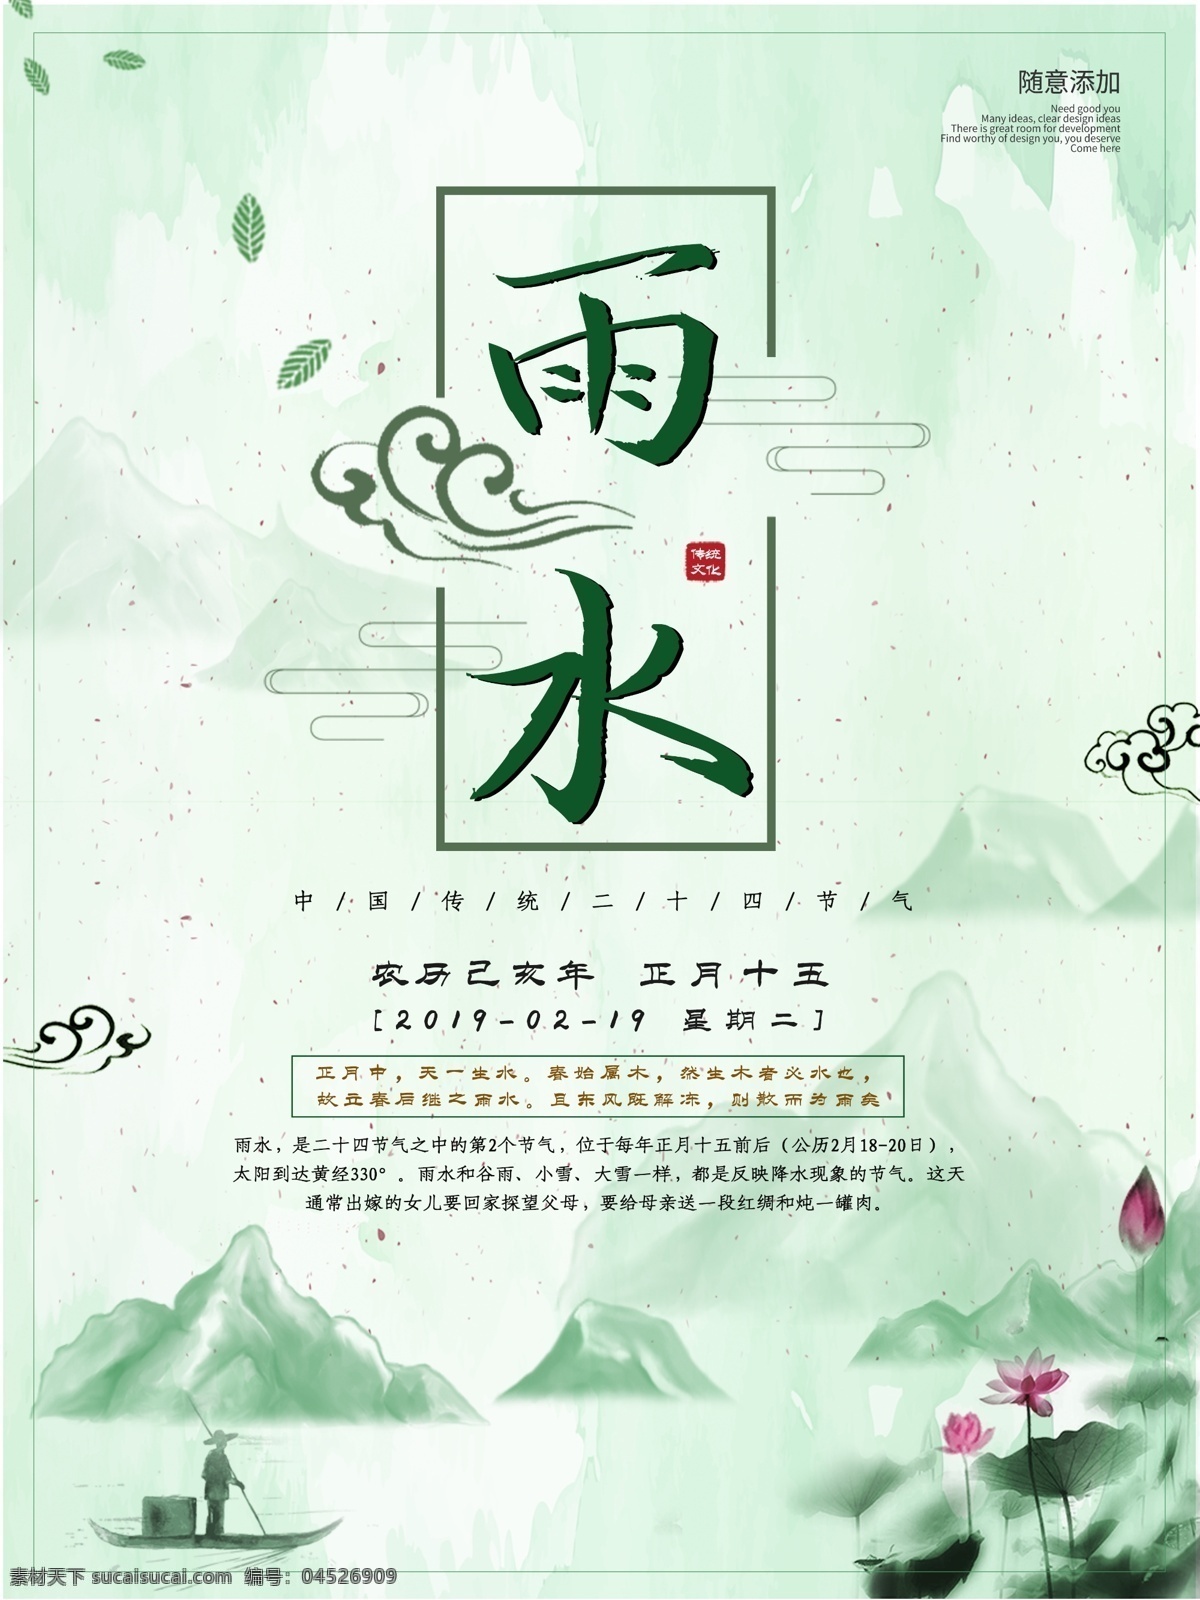 雨水海报 二十四节气 雨水节气 人物美女 古风元素 中国风 柳叶 荷花 绿色背景 节日节气海报